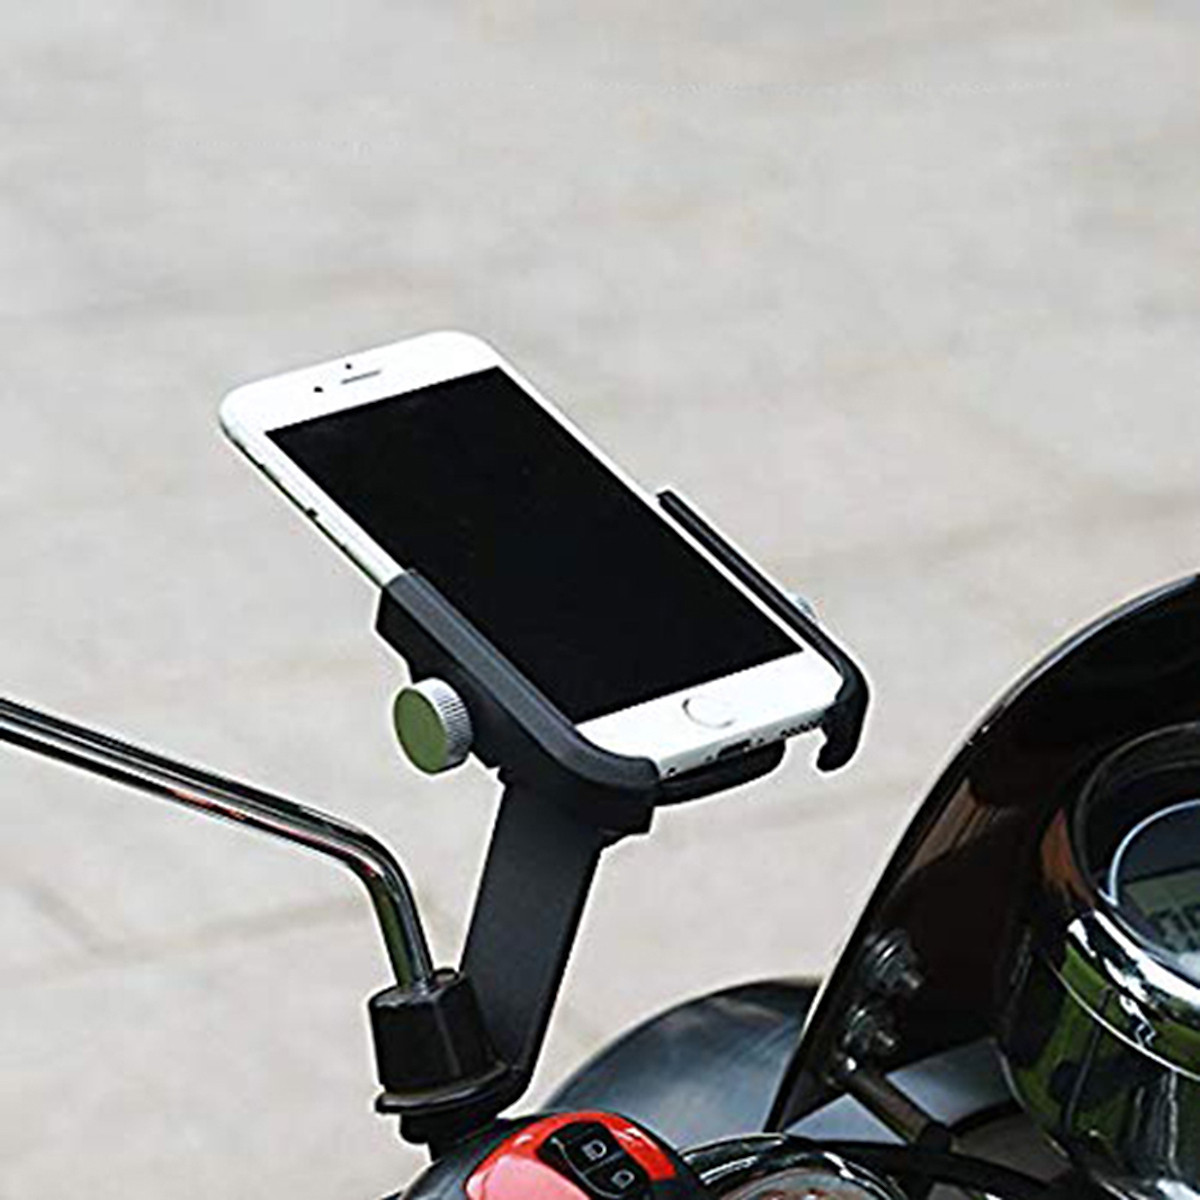 Giá đỡ kẹp điện thoại cho xe máy / xe mô tô A1000 - Hợp Kim Nhôm Cao Cấp Chống Rung, Chống Cướp Giật Điều Chỉnh Xoay Ngang Dọc 360 độ - Giao màu ngẫu nhiên - Hàng chính hãng